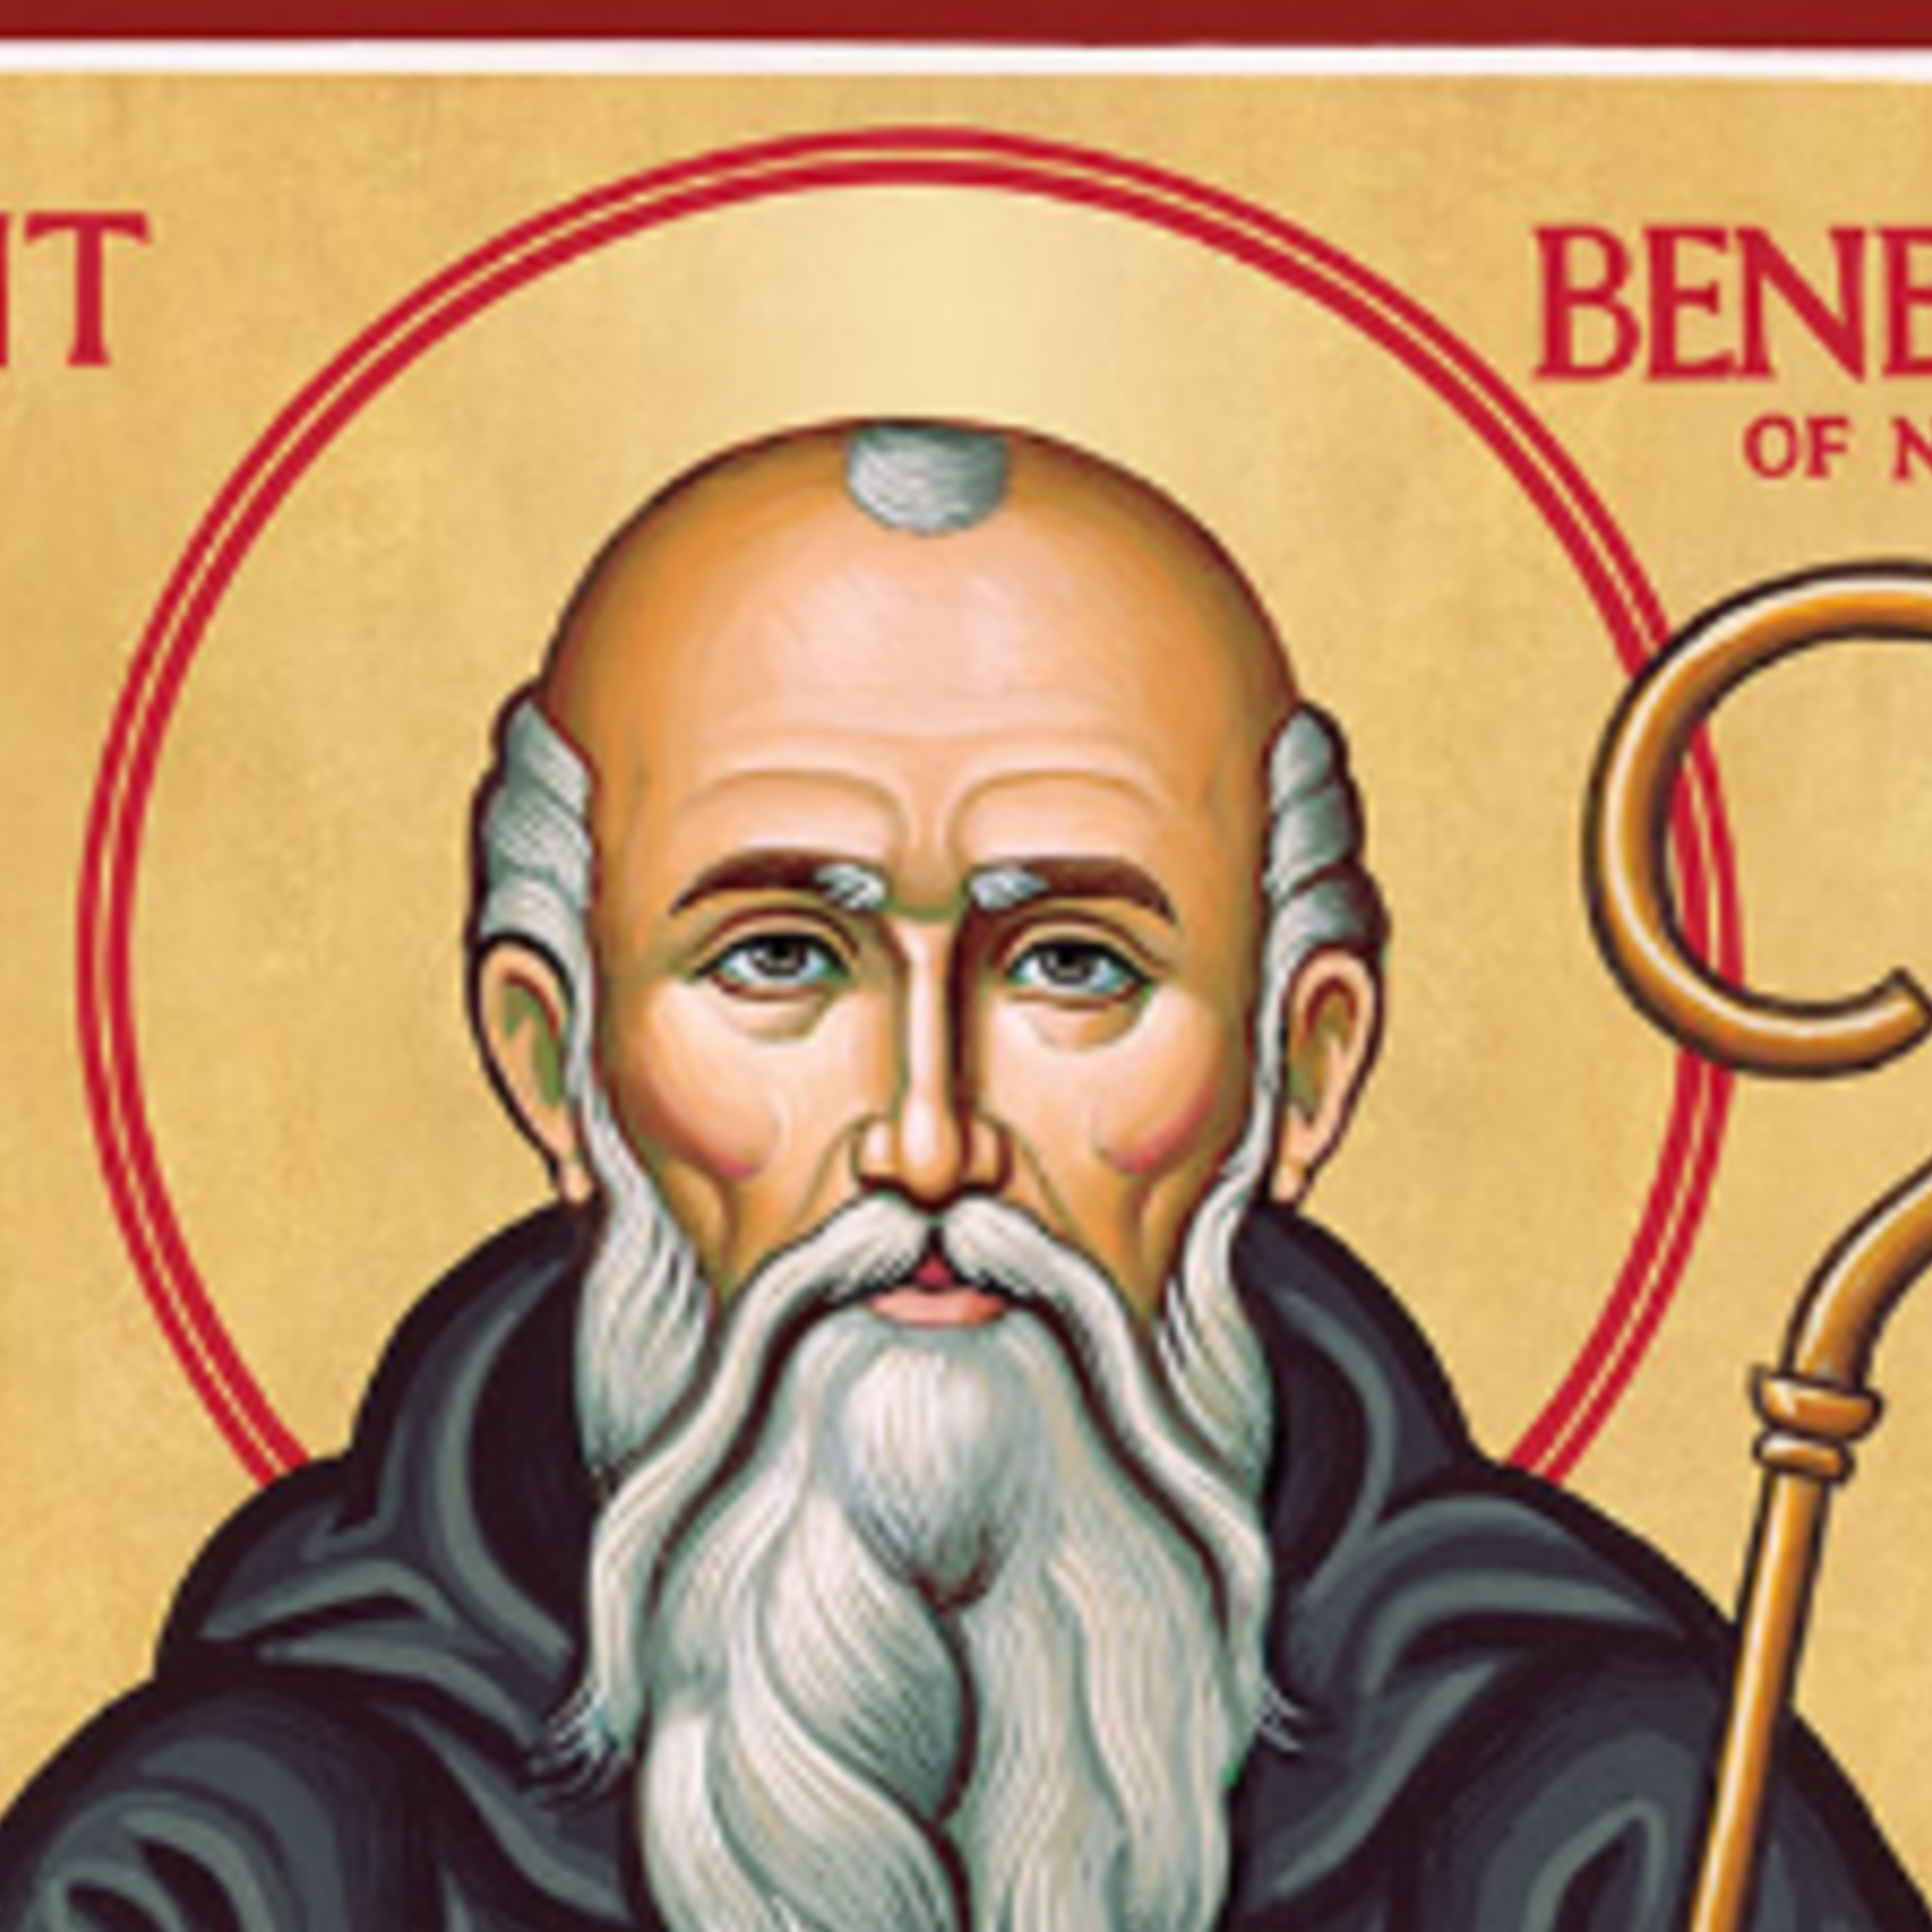 St Benedict V2 Fotor 20230703133945